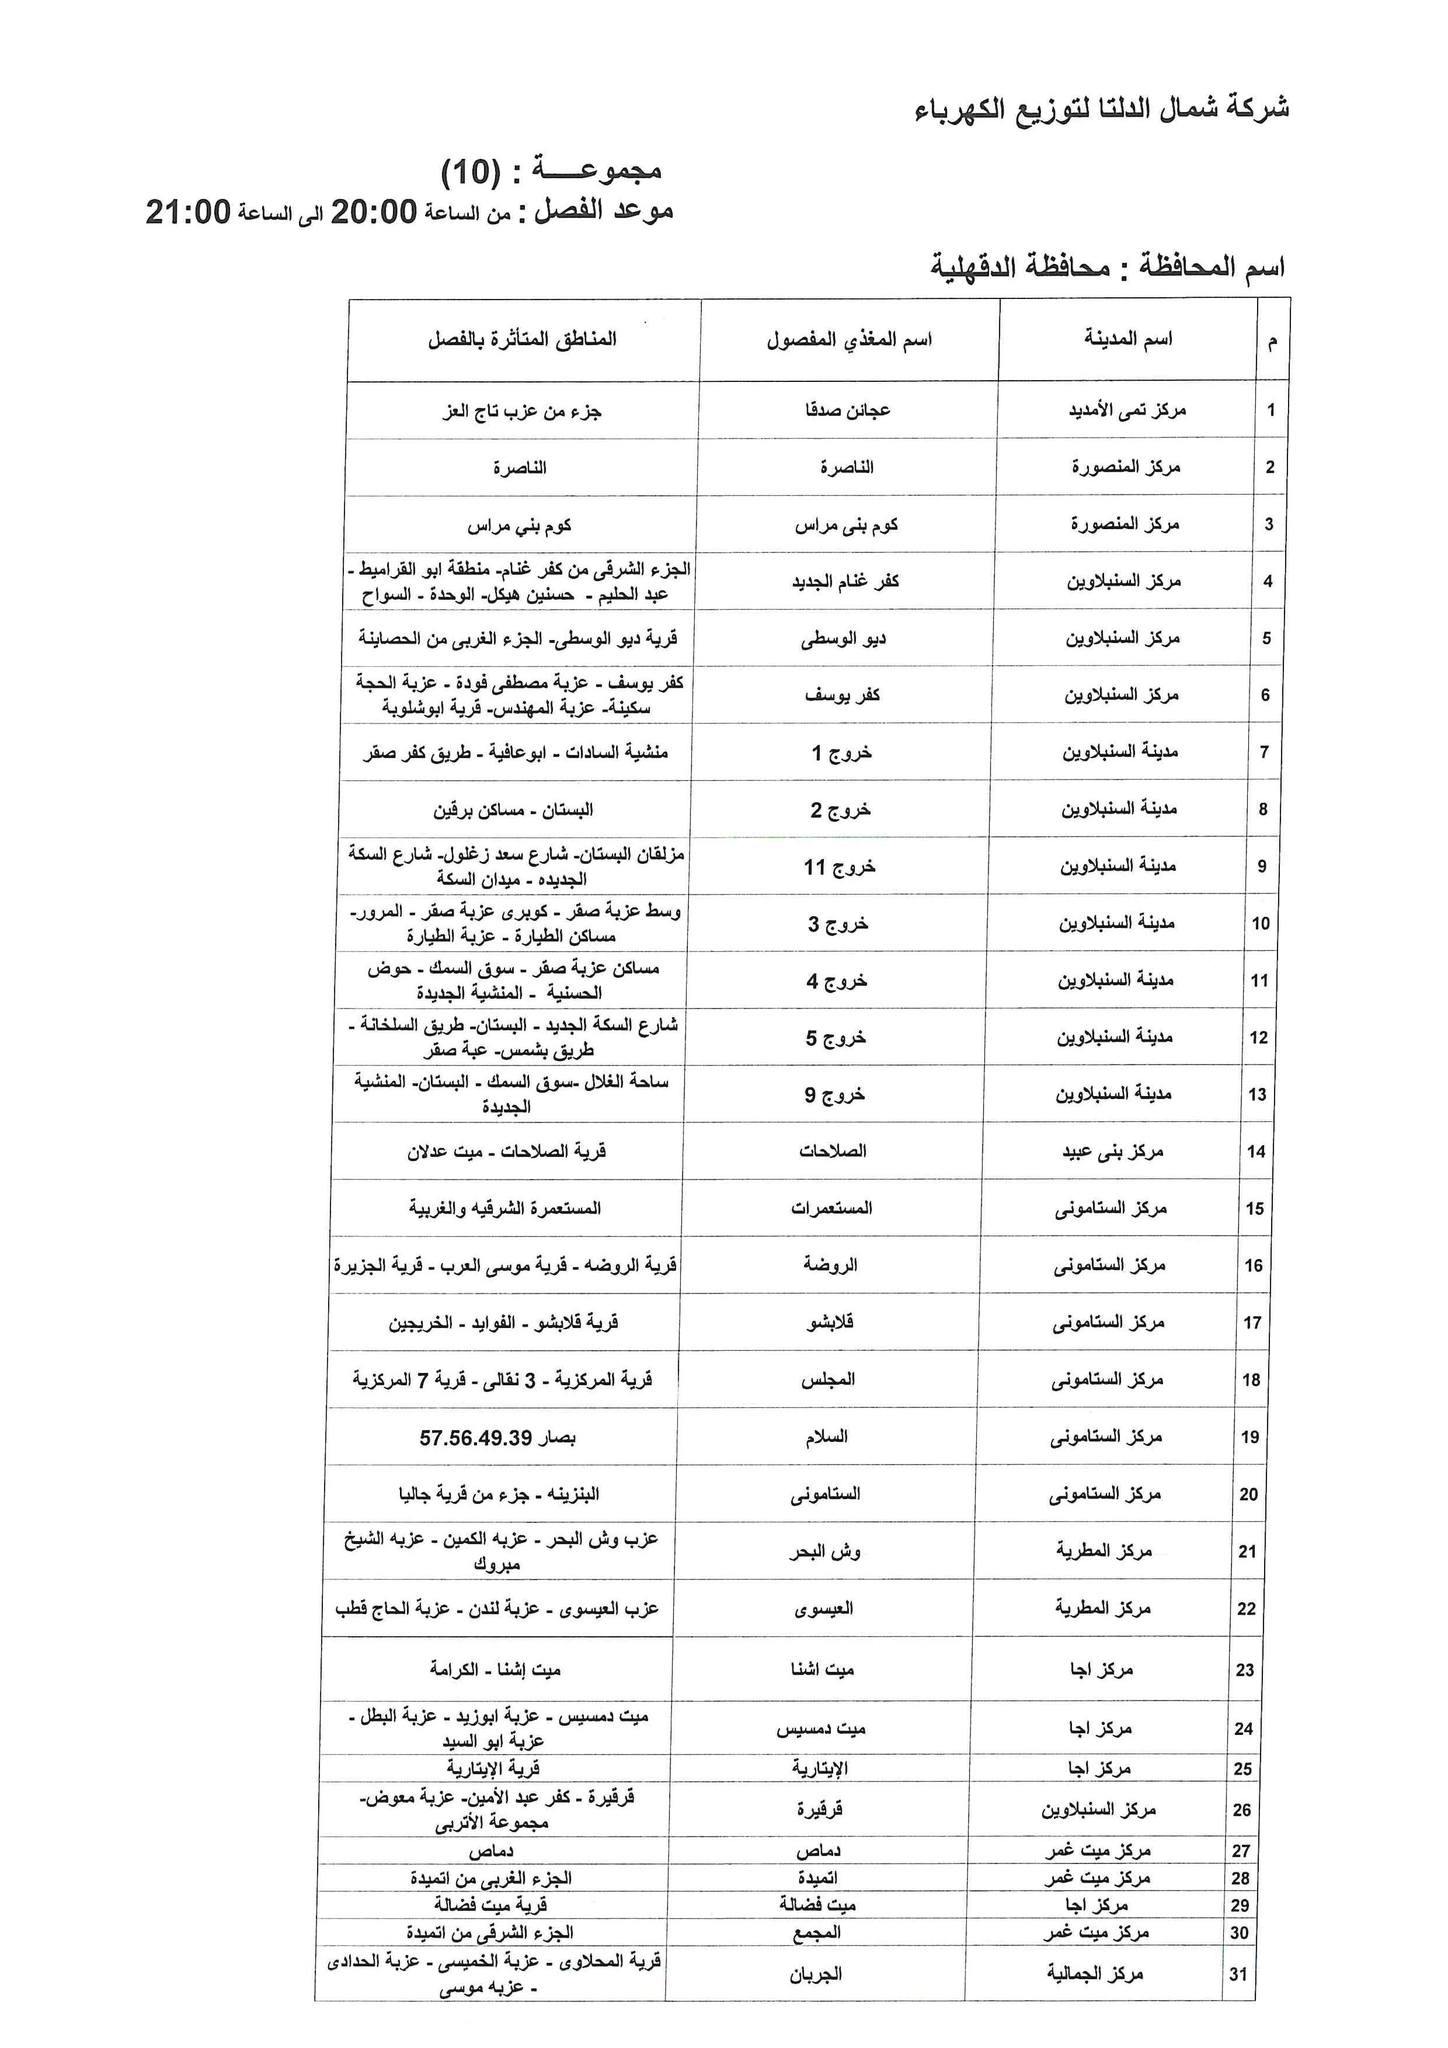 الإعلان عن خطة تخفيف أحمال الكهرباء فى محافظة الدقهلية 18